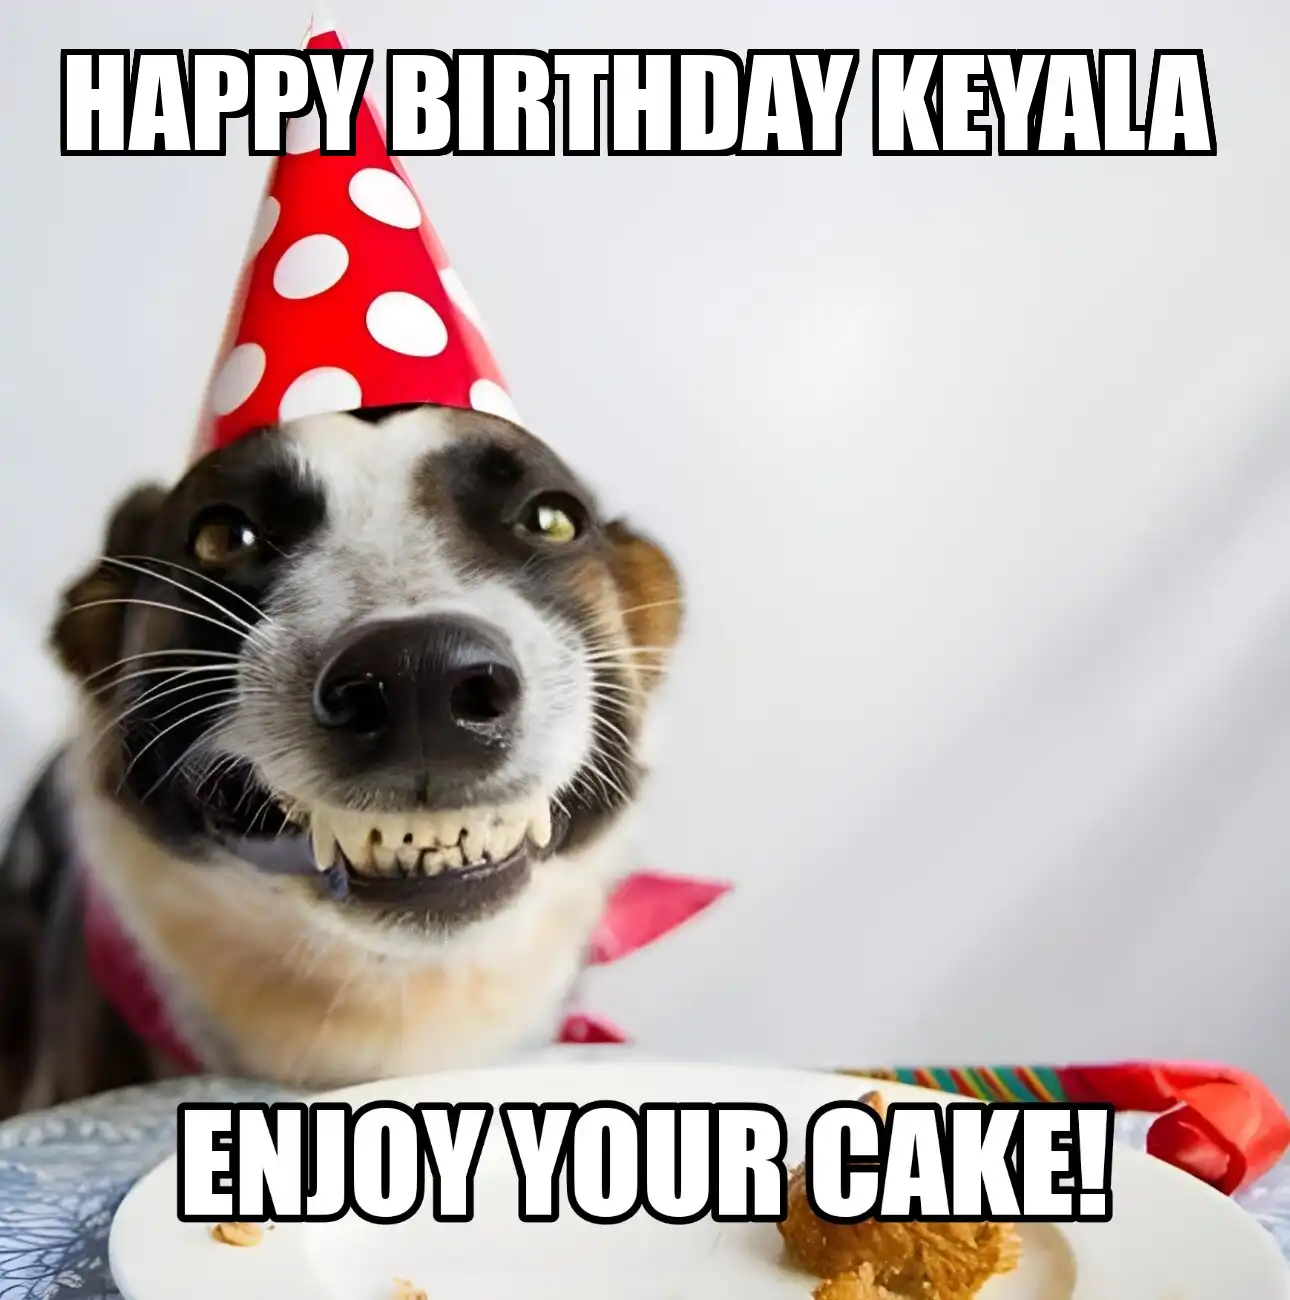 Happy Birthday Keyala Enjoy Your Cake Dog Meme